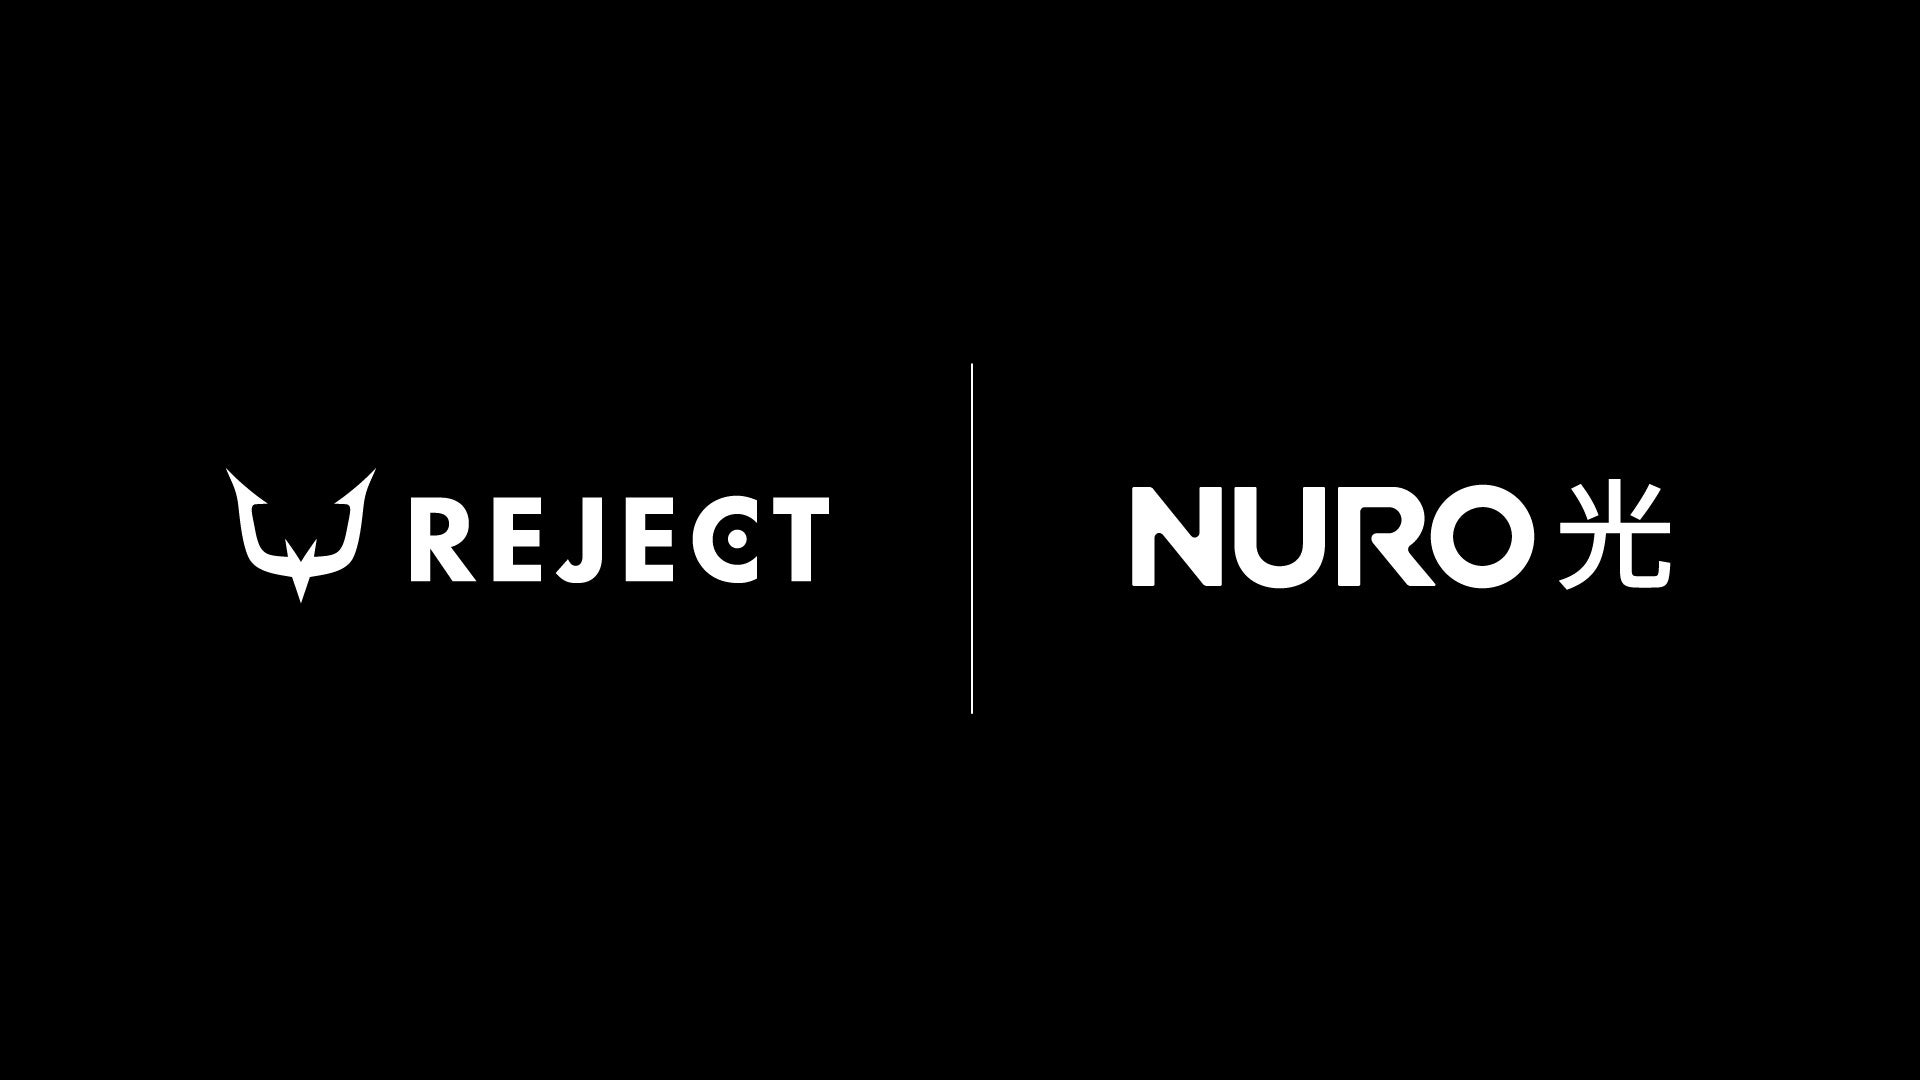 高速光回線サービス「NURO 光」、プロeスポーツチーム「REJECT」とチームスポンサーシップ契約を更新